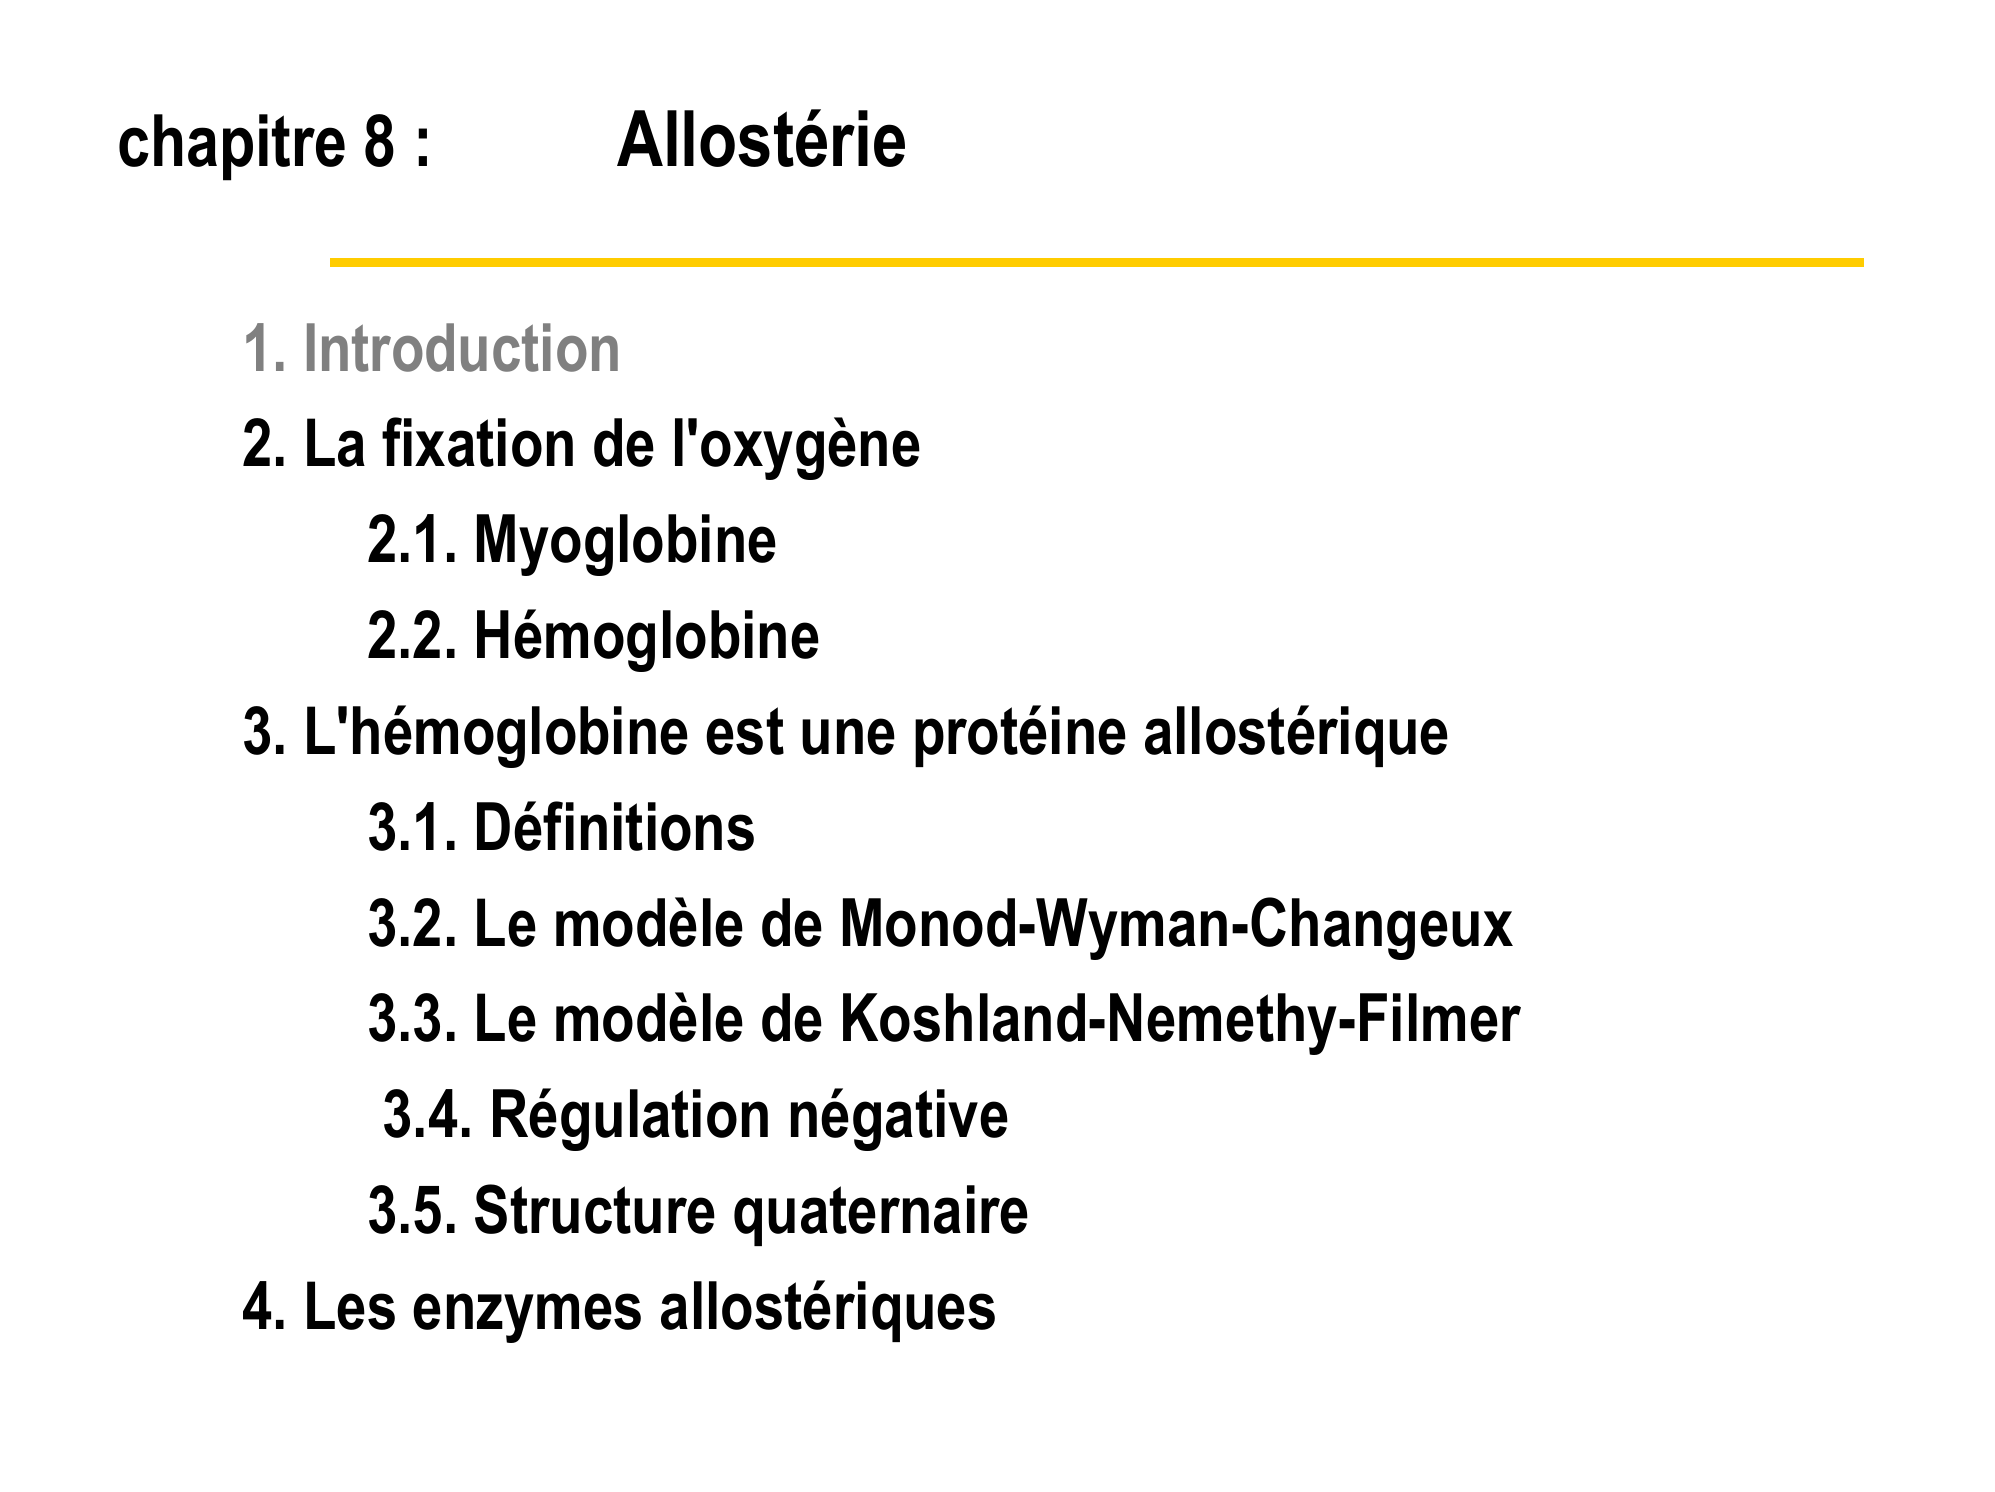 Prévisualisation du document Licence de Biologie
Année universitaire 2001-2002
Cours d'Enzymologie et Biochimie Structurale

chapitre 8:
Allostérie

Jacques C.